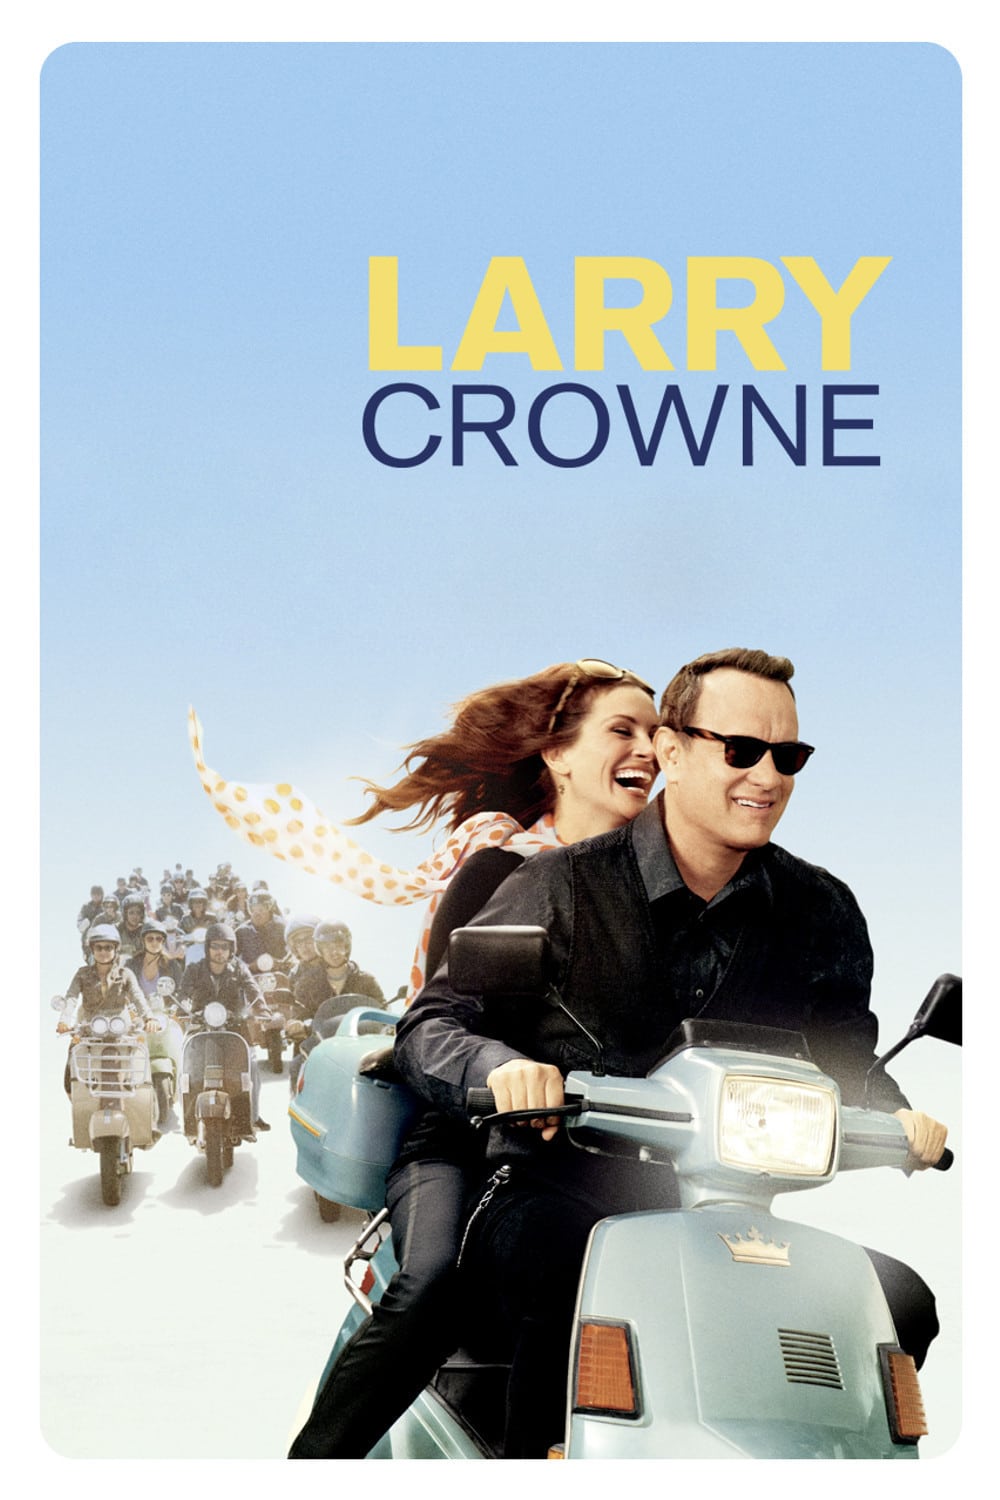 Plakat von "Larry Crowne"